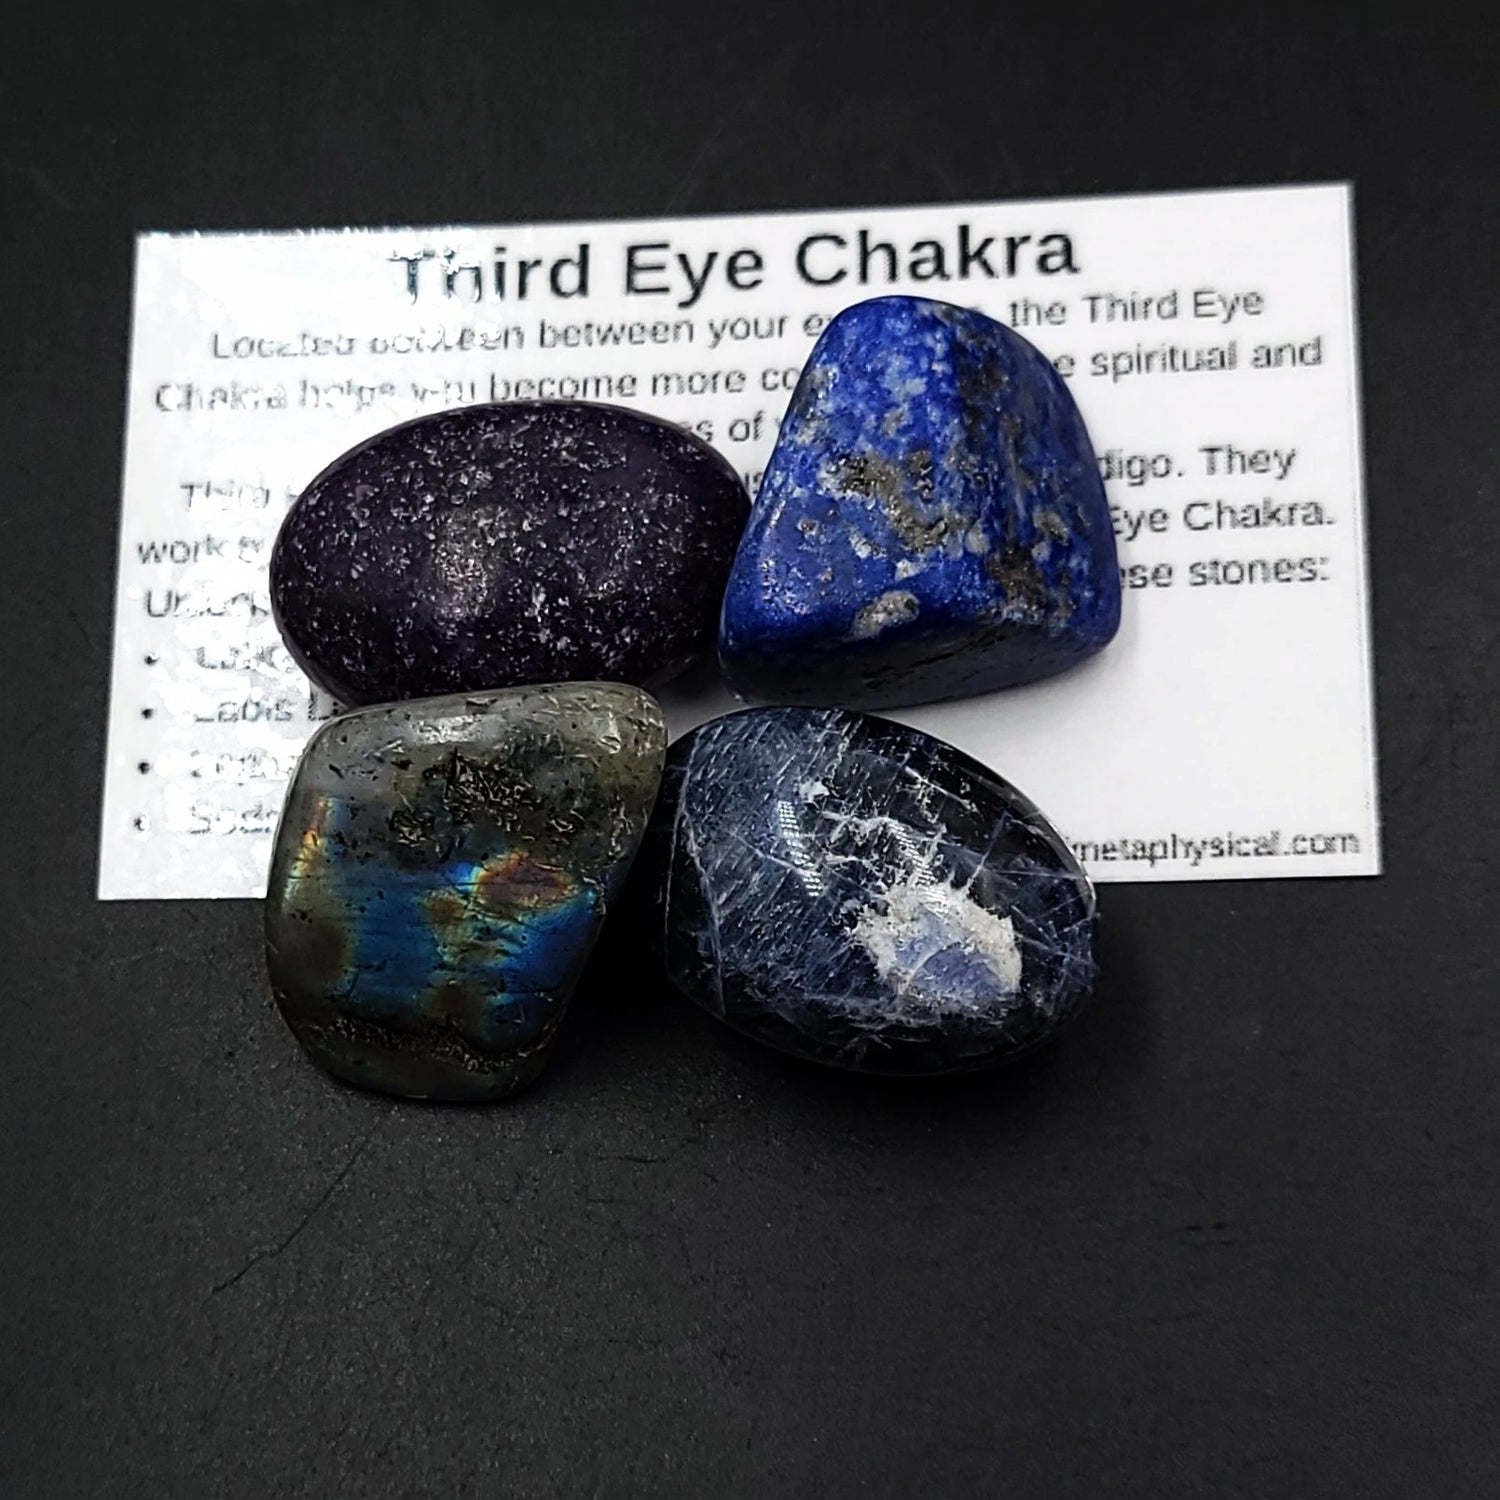 Third Eye Chakra Stone Set - Elevated Metaphysical